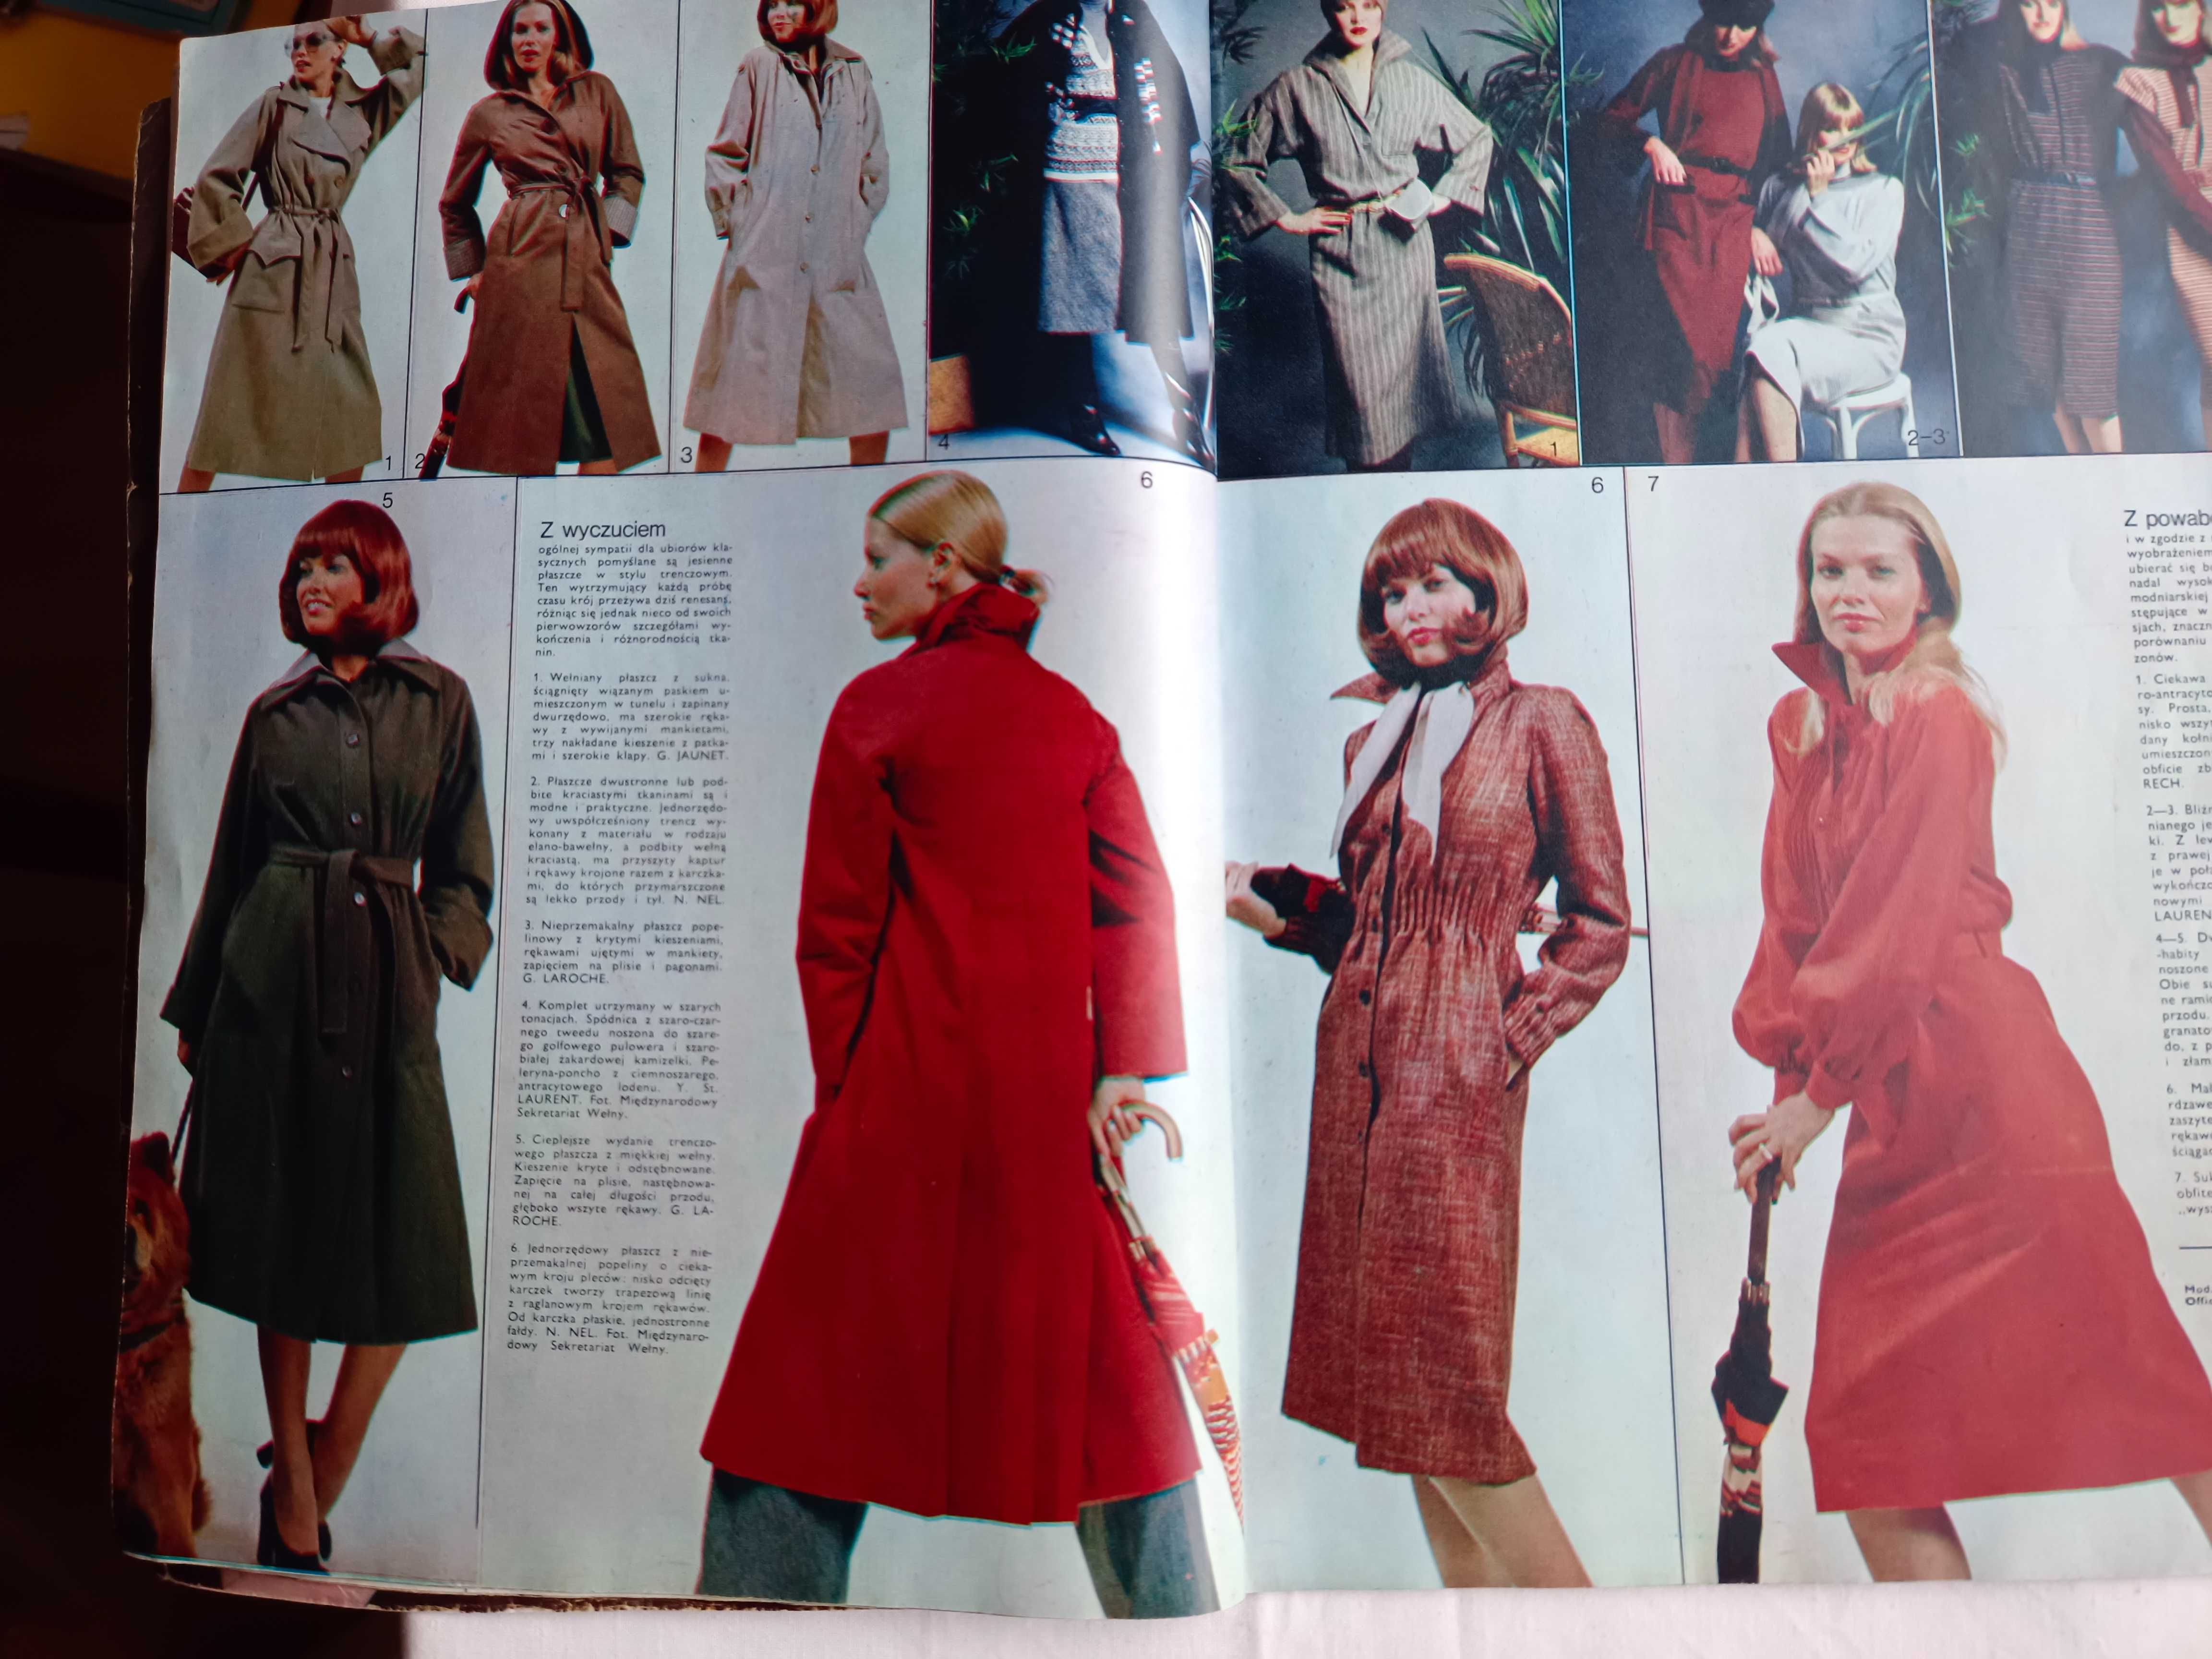 Świat mody nr 105, jesień 1975